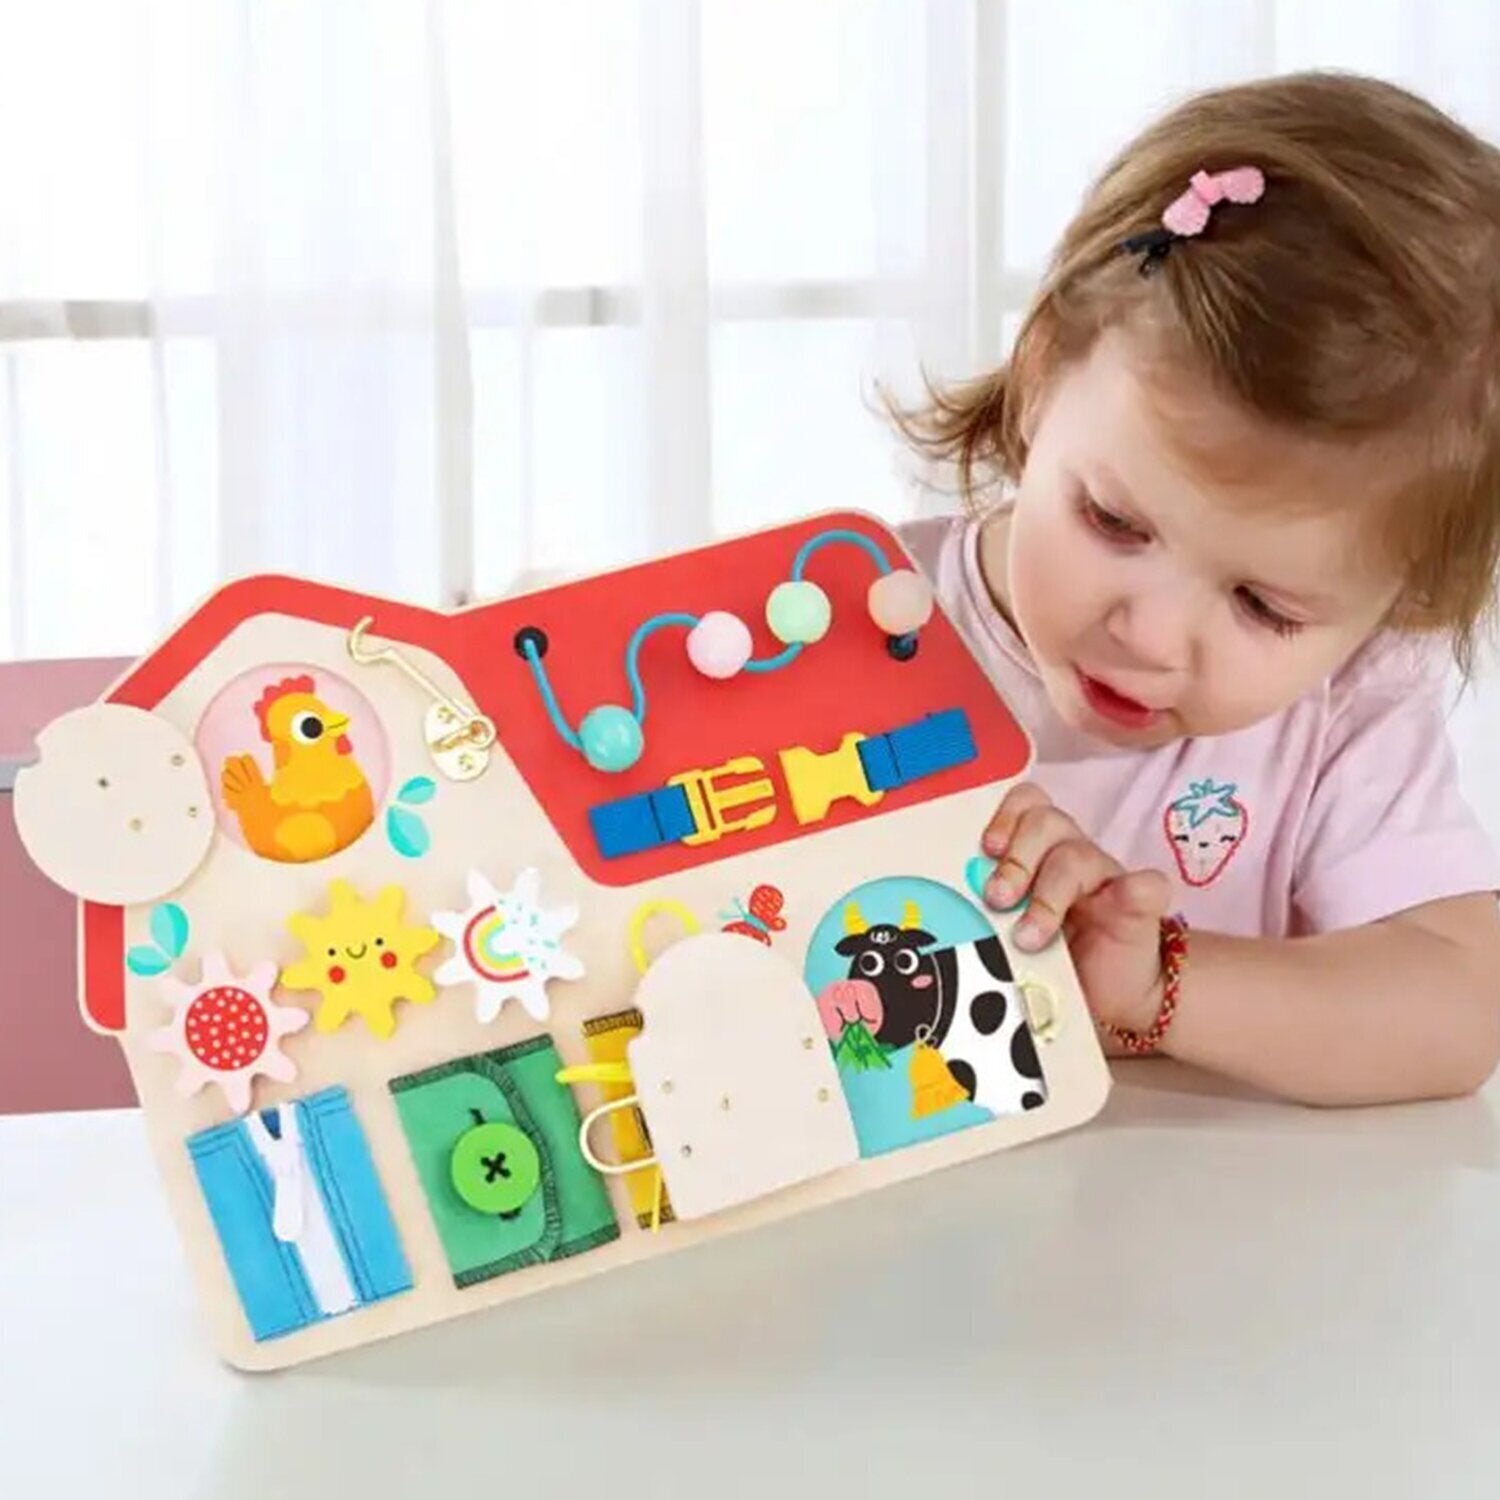 Takens Toy Hölzerner Tisch Montessori Manipulative Schleusenschleife Schleife